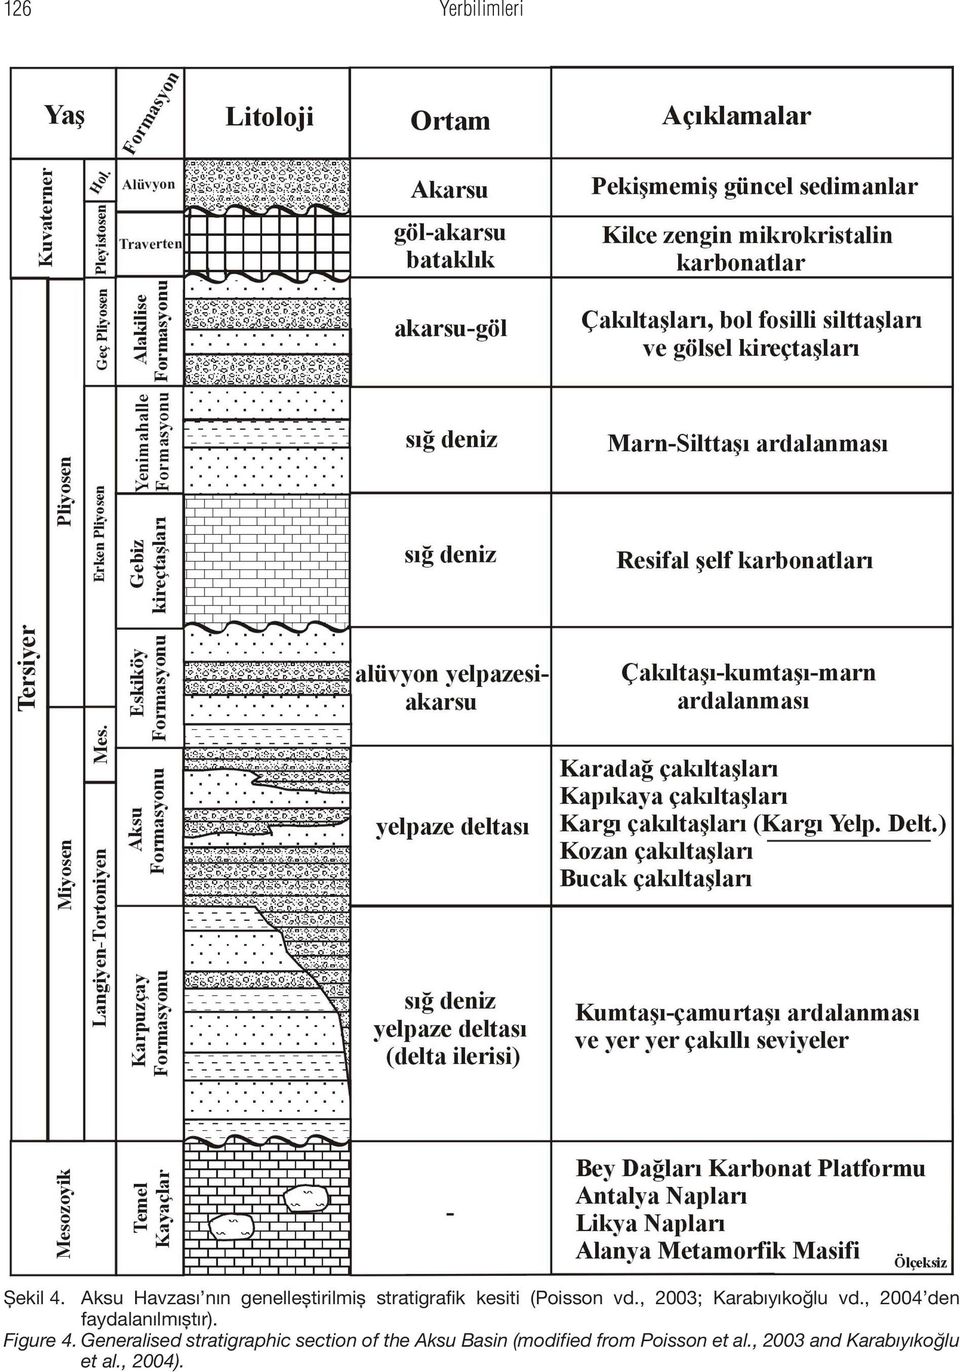 , 2003; Karabıyıkoğlu vd., 2004 den faydalanılmıştır). Figure 4.